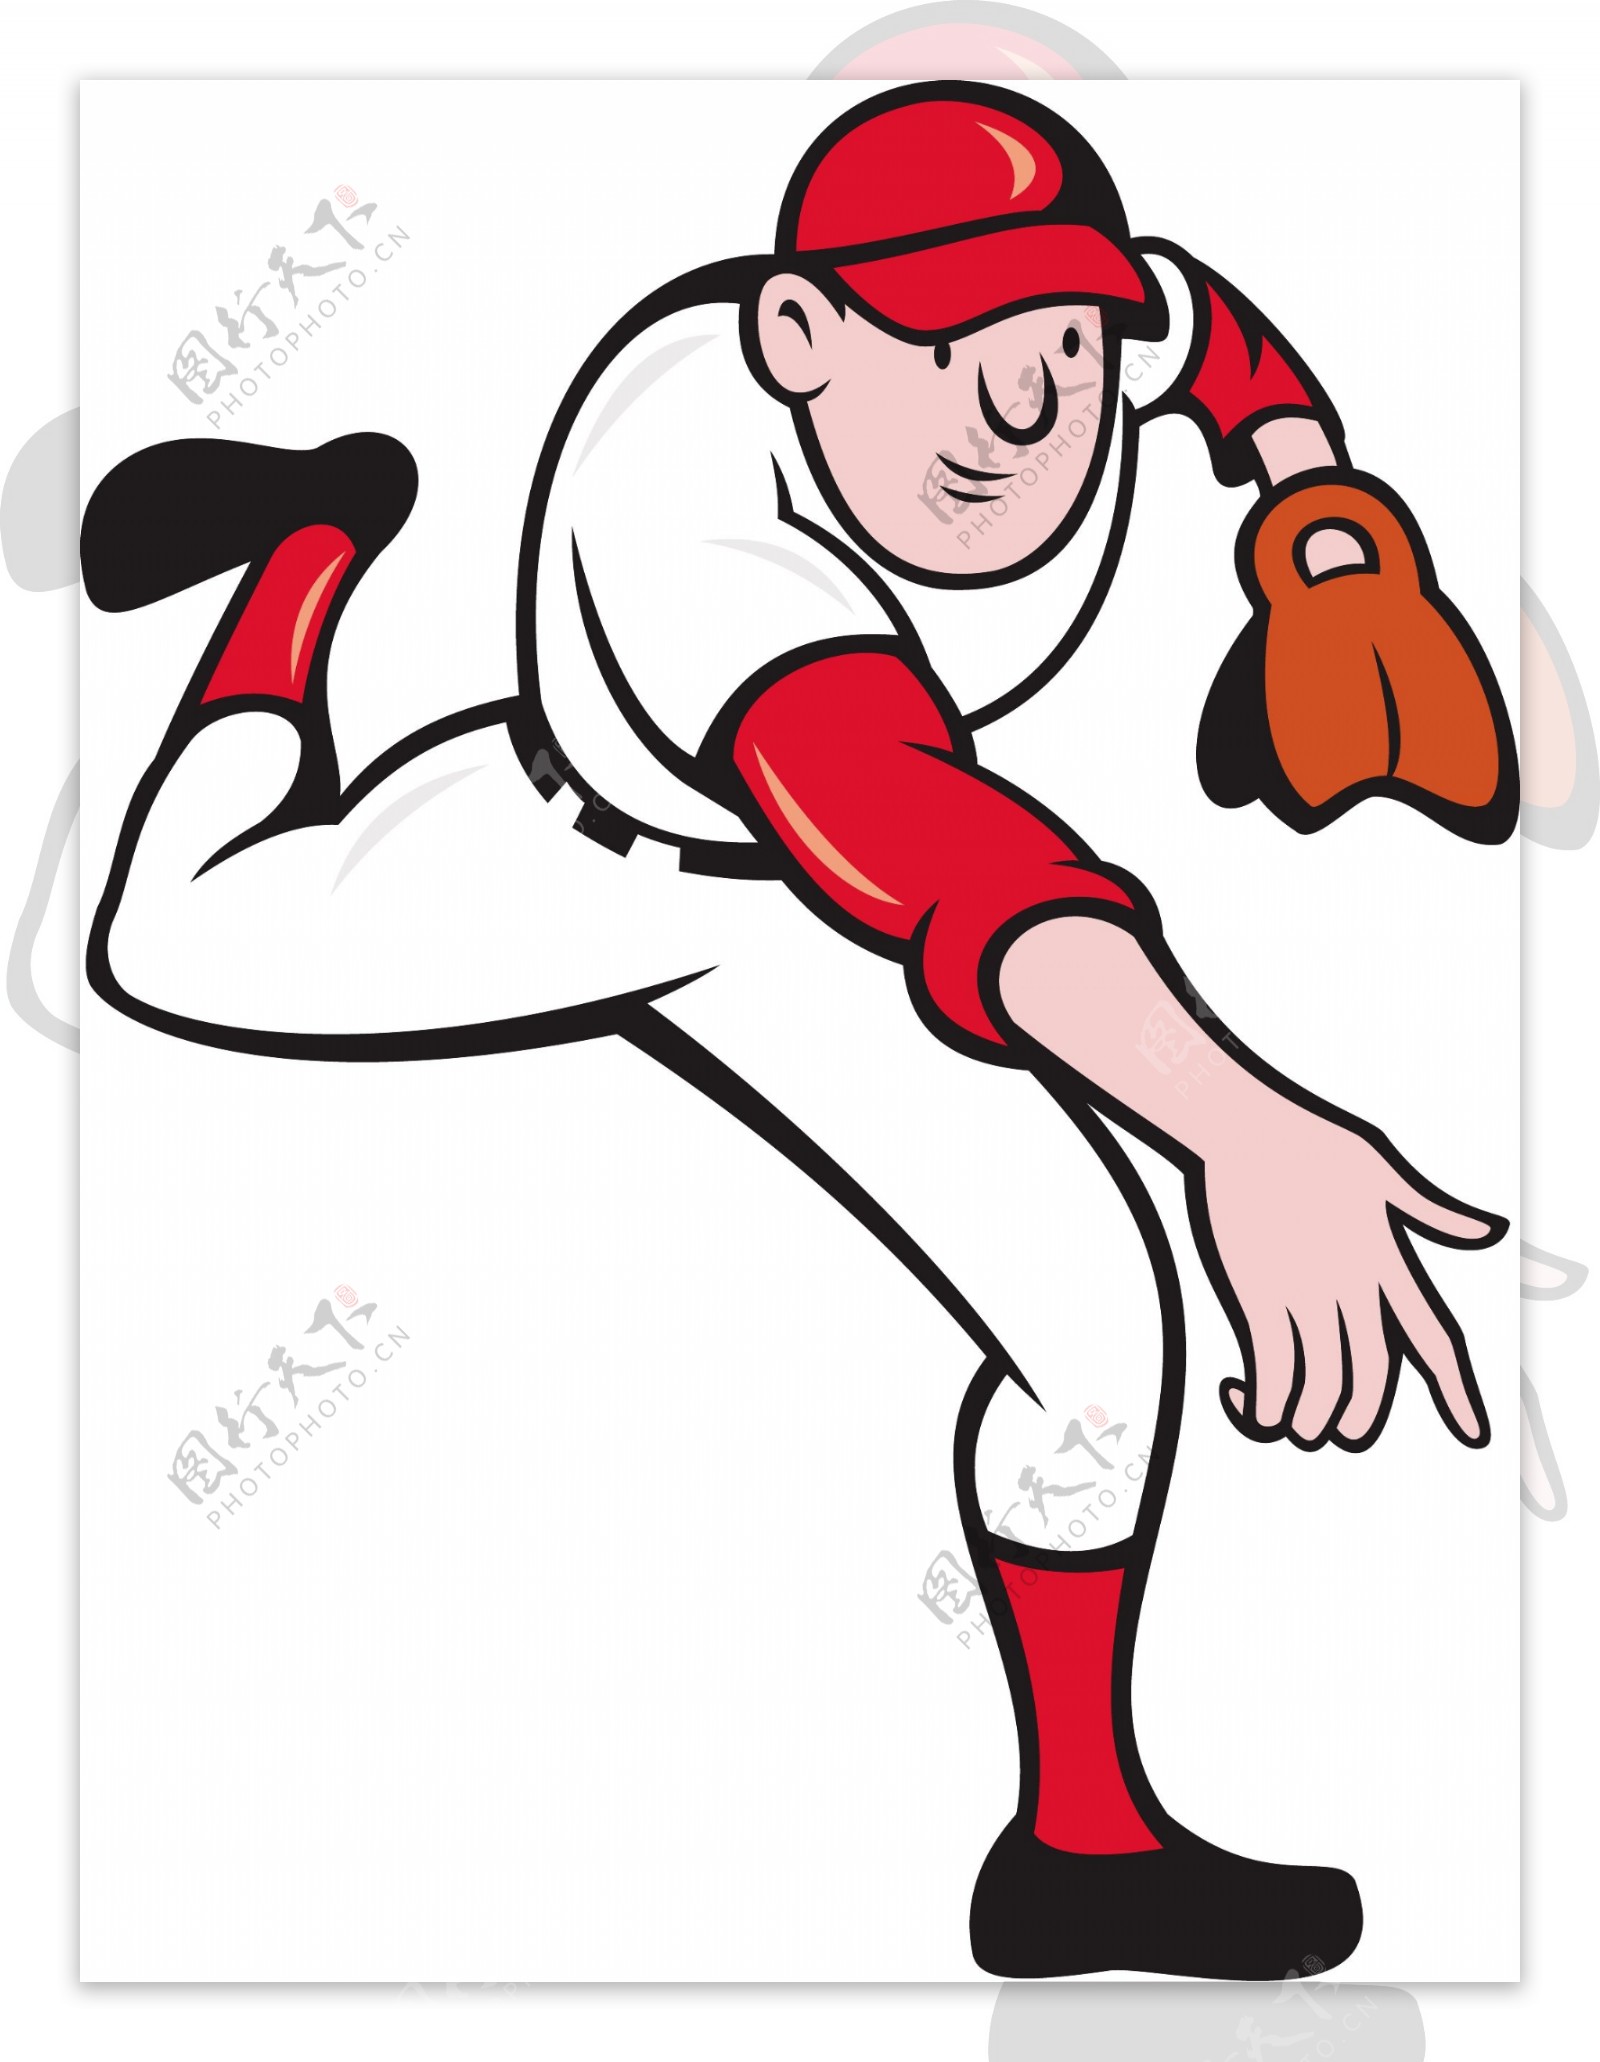 投手投掷棒球运动员的卡通